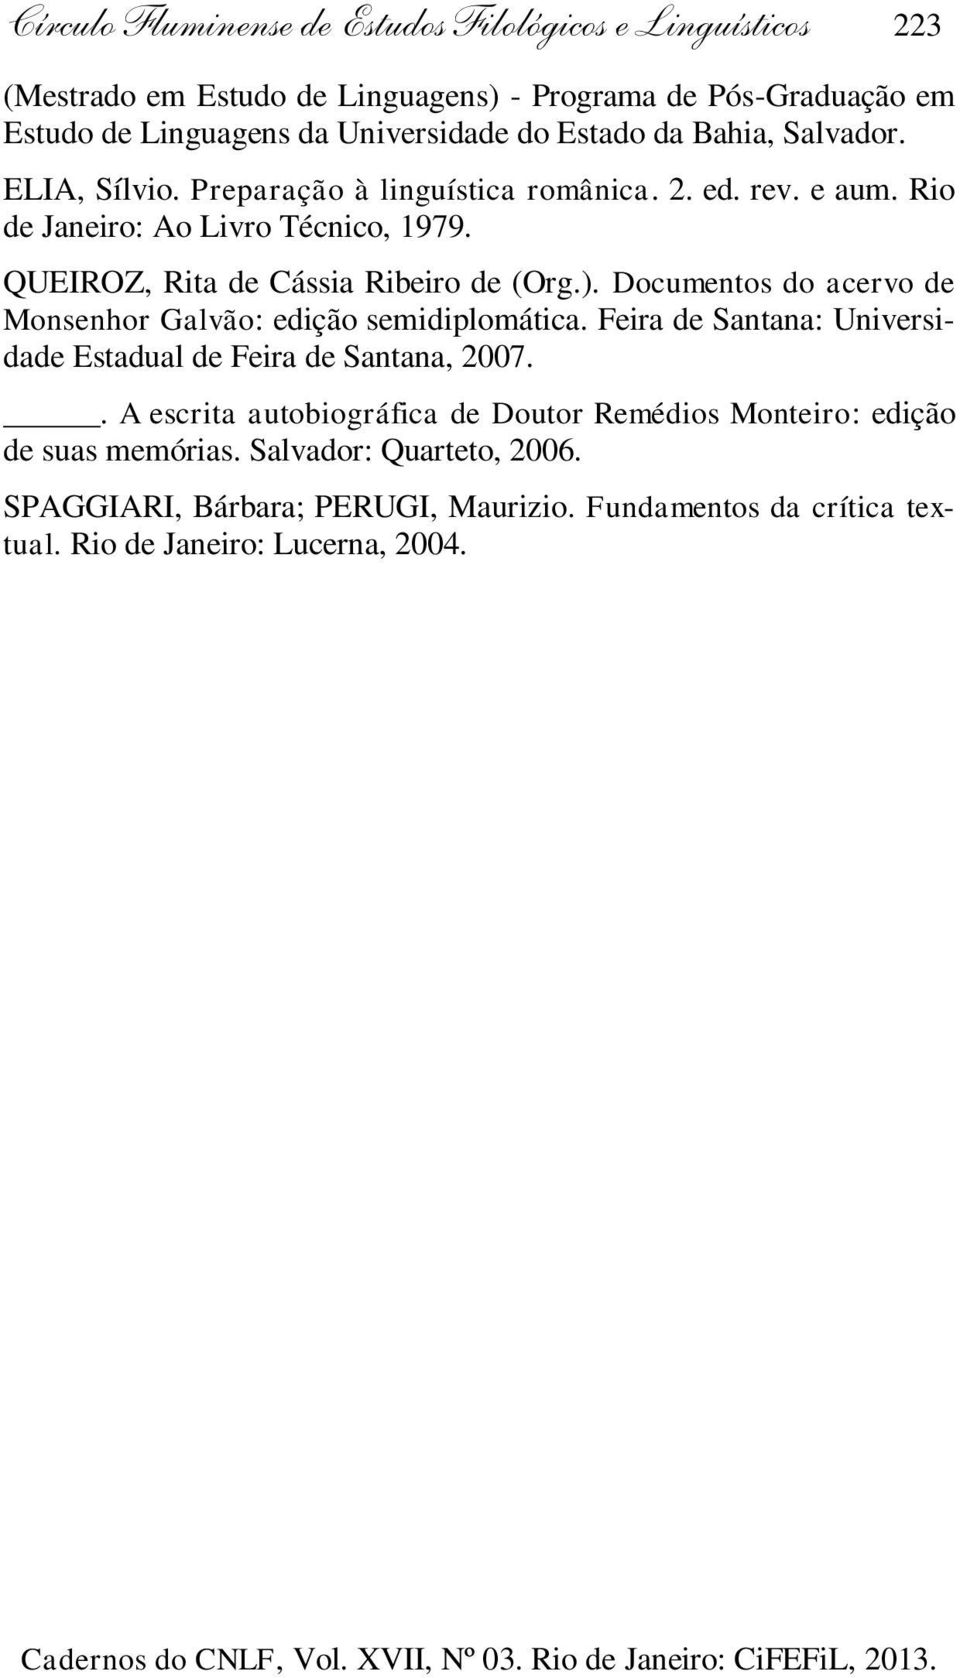 QUEIROZ, Rita de Cássia Ribeiro de (Org.). Documentos do acervo de Monsenhor Galvão: edição semidiplomática.